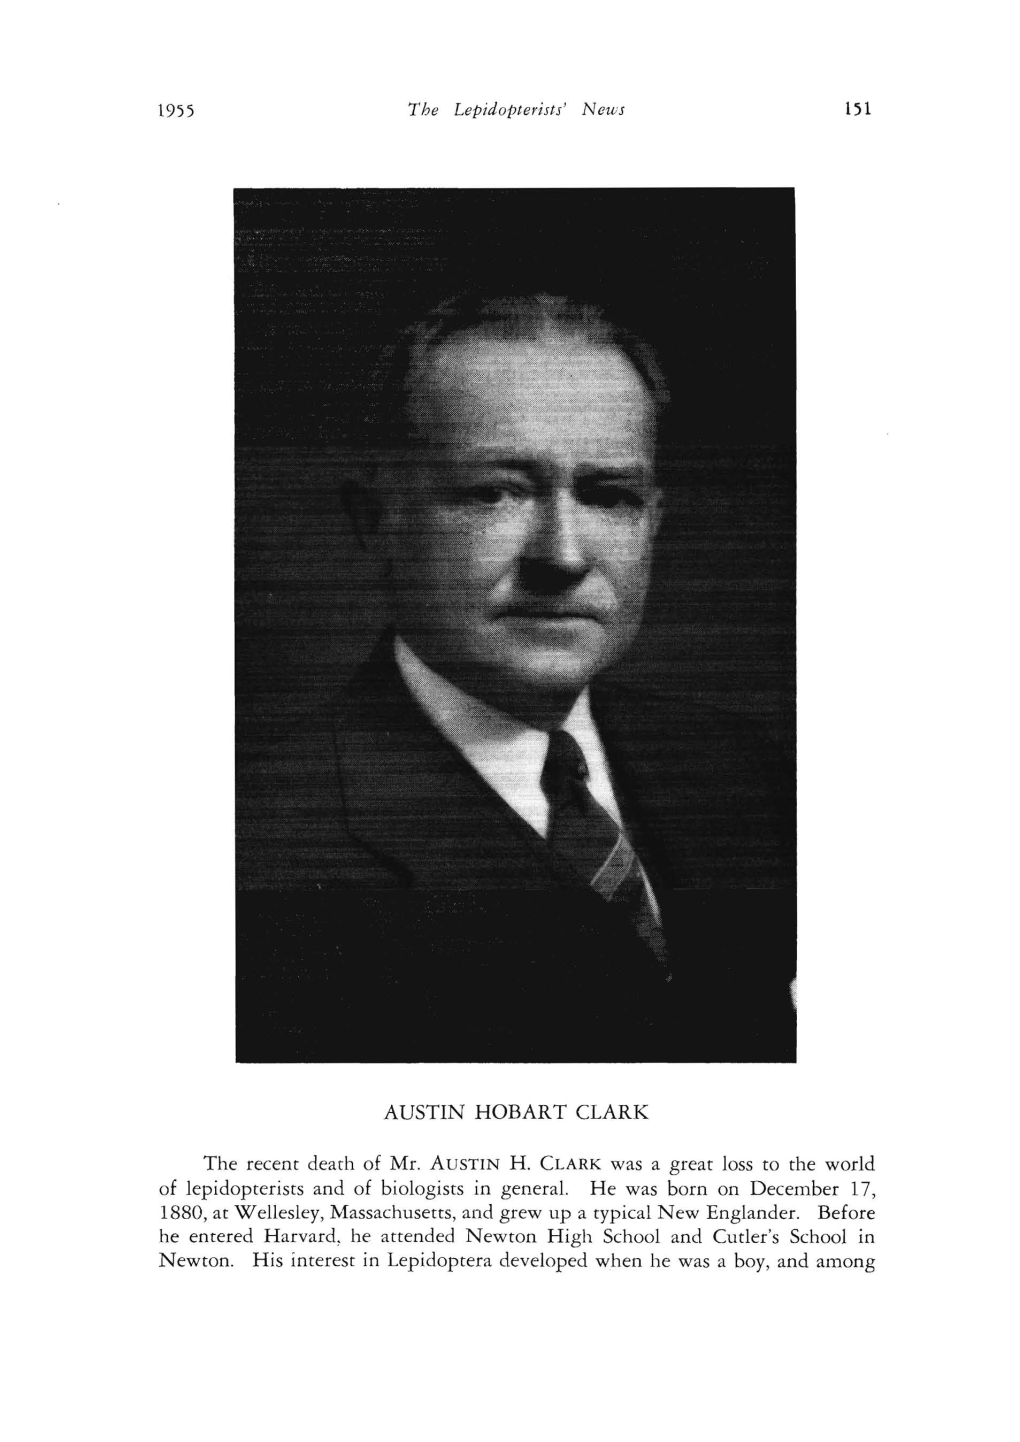 AUSTIN HOBART CLARK the Recent Death of Mr. AUSTIN H. CLARK Was